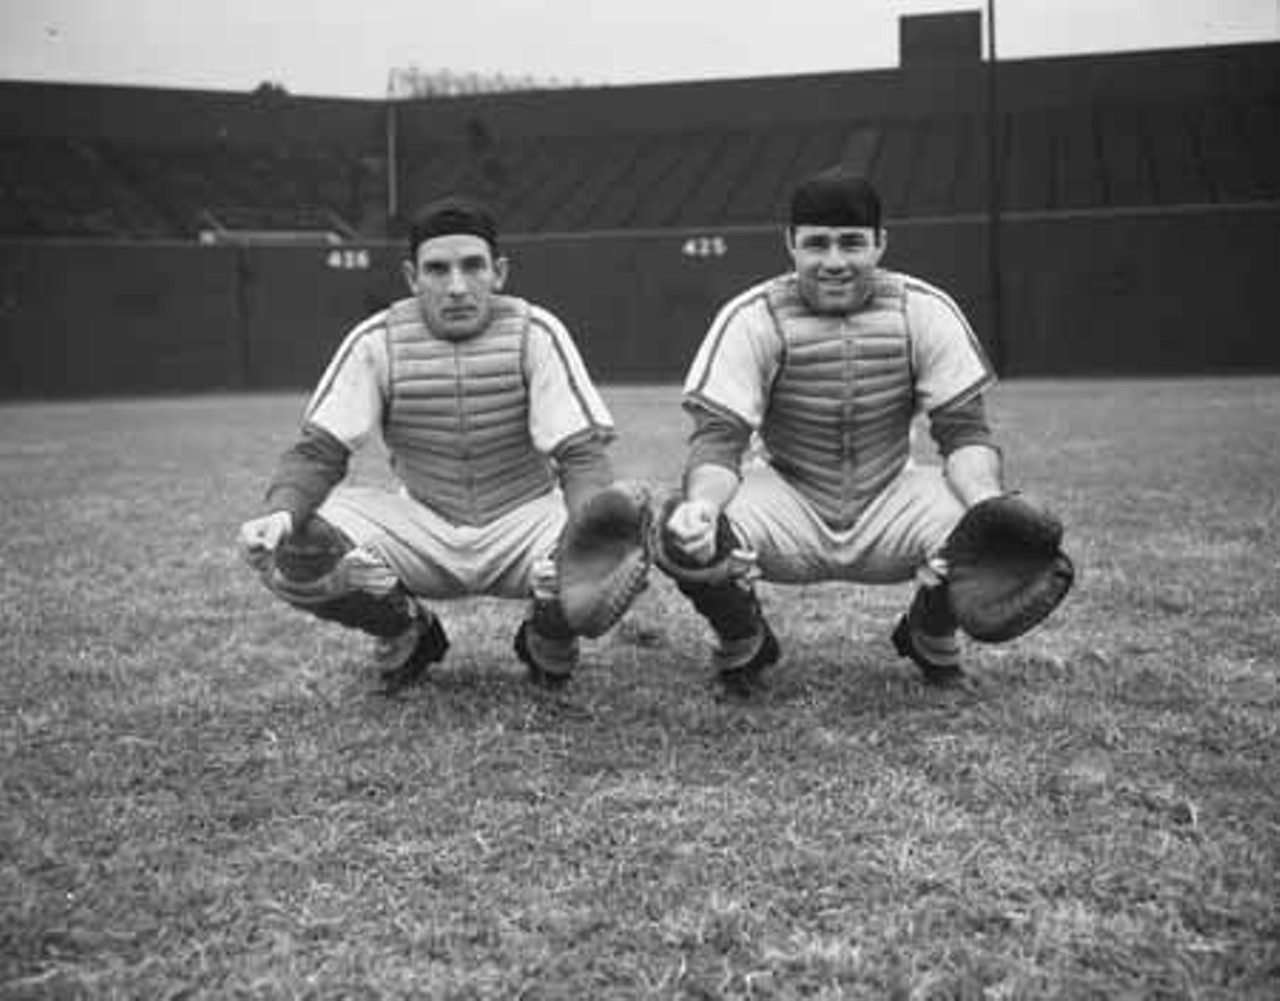 1949. Del Rice and Joe Garagiola. RIP, Joe.